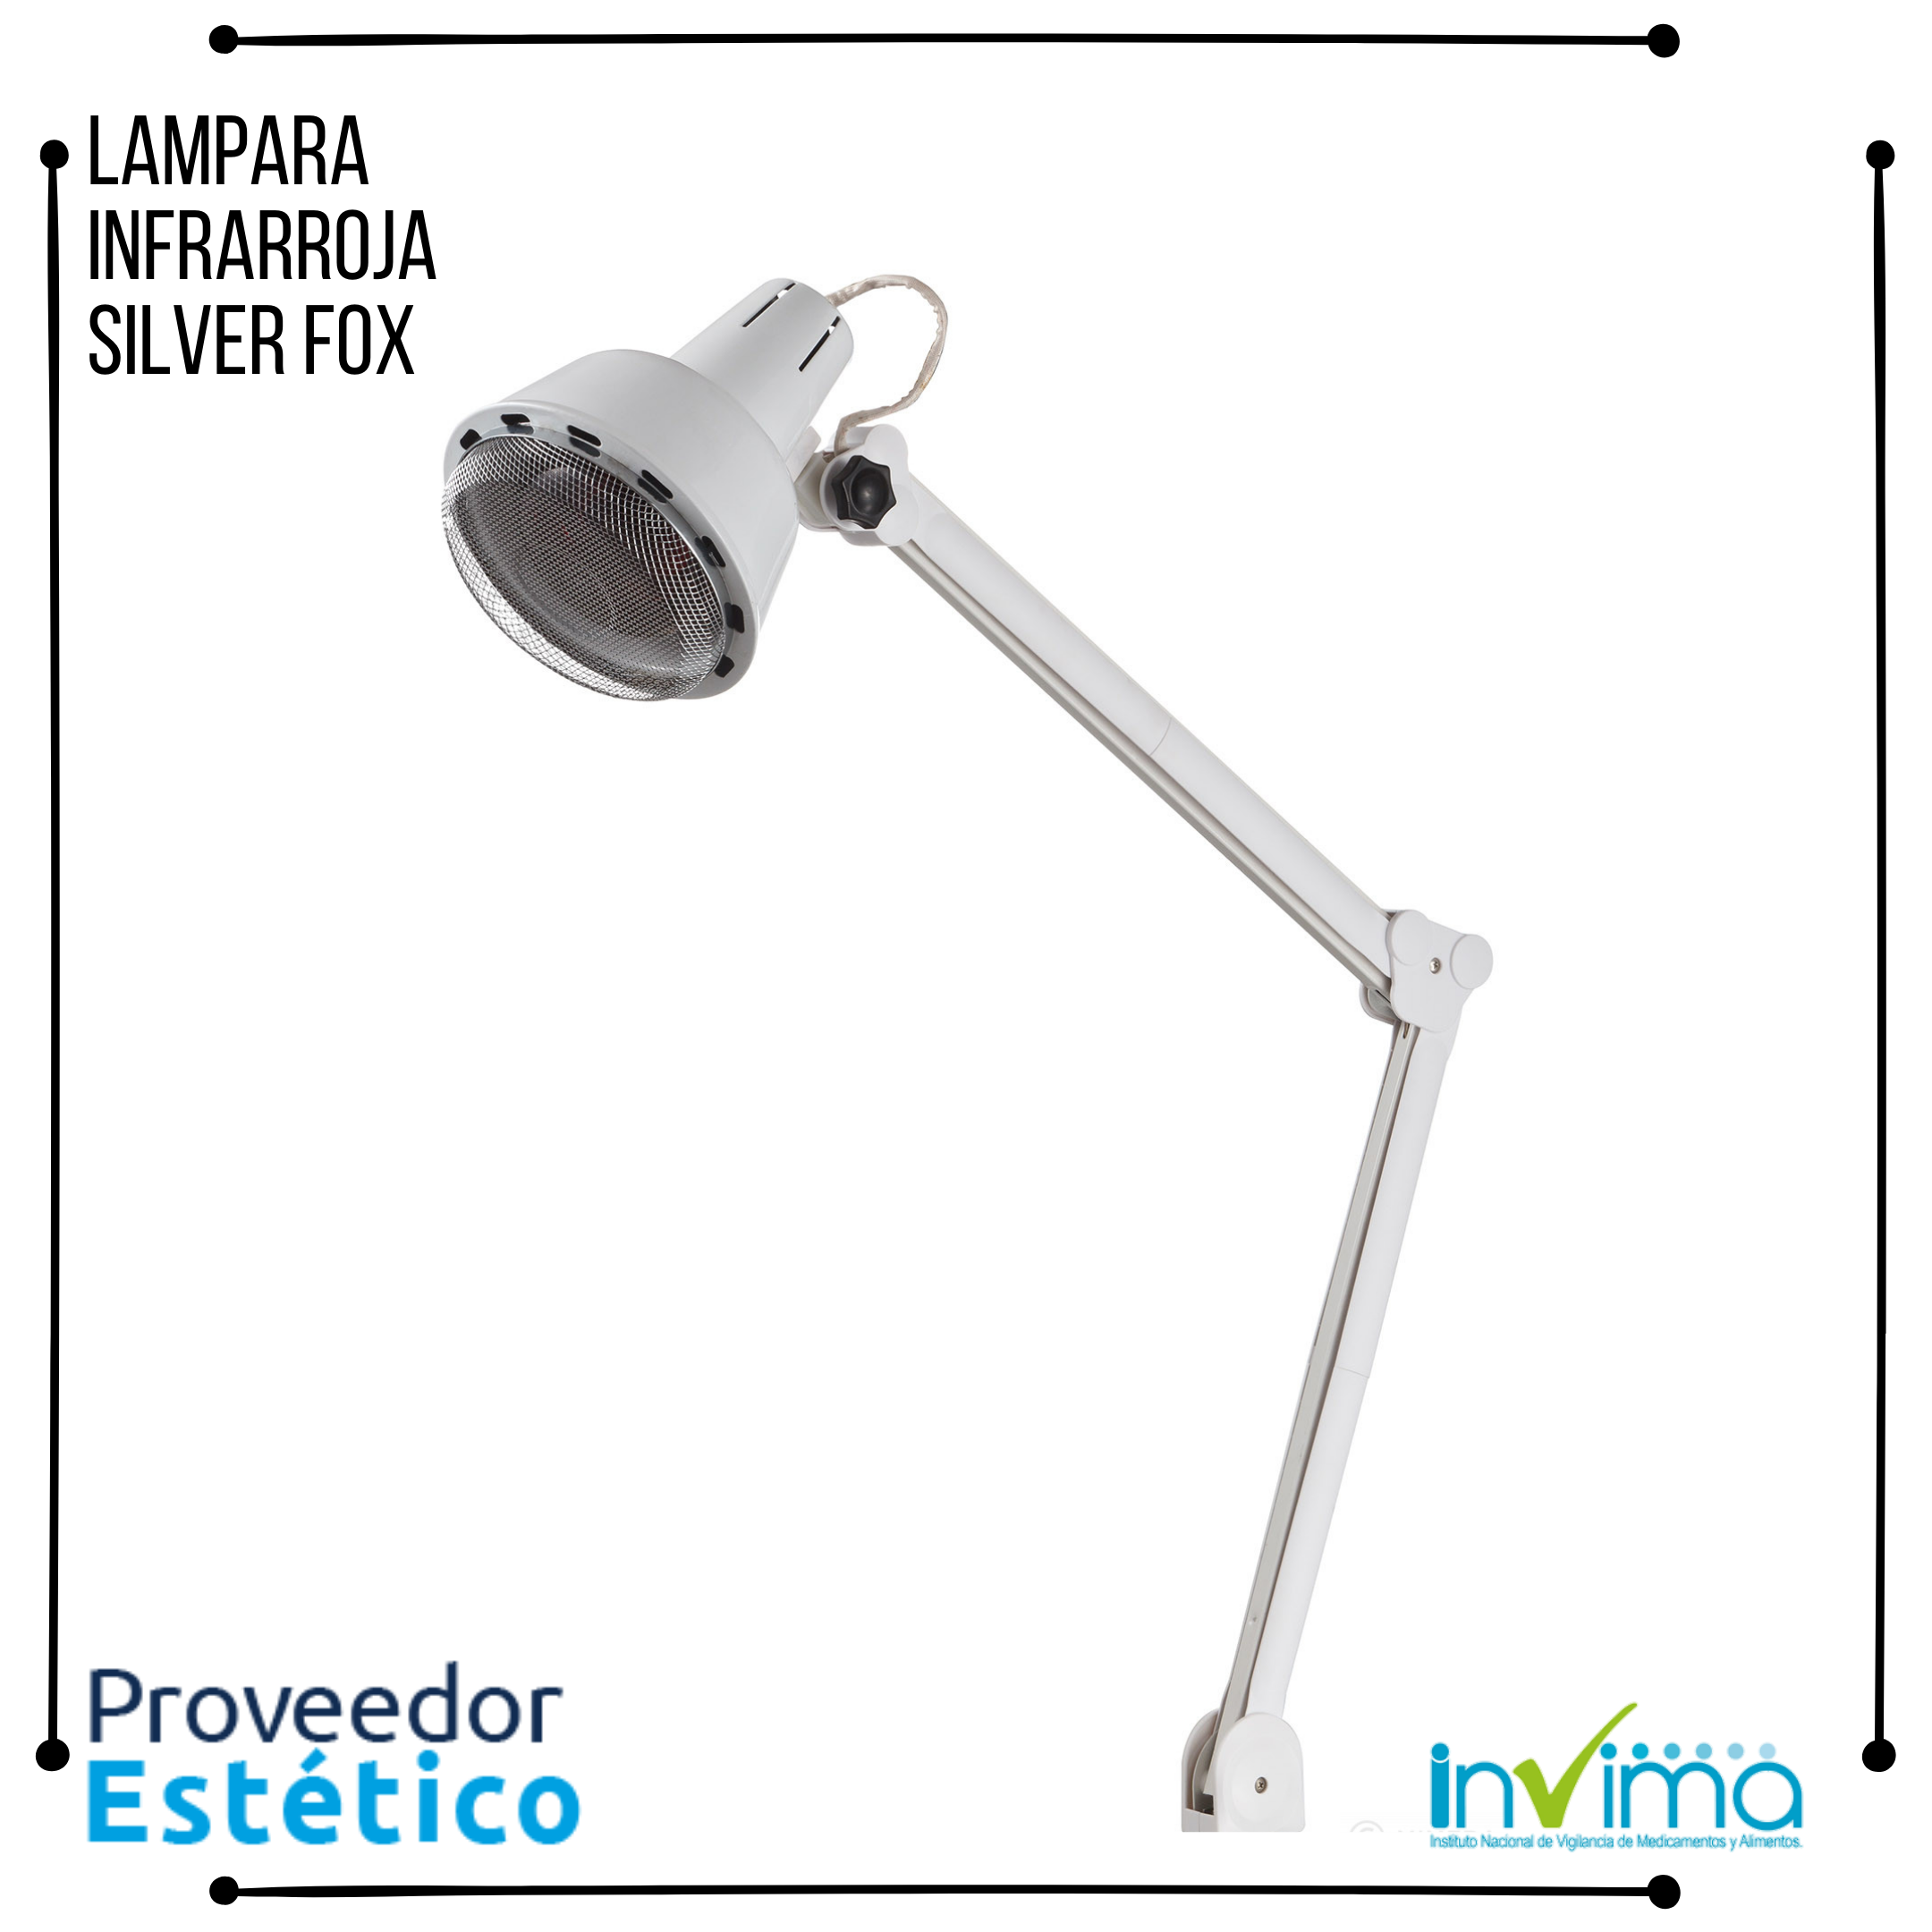 Lampara Infrarroja Silver Fox 1003